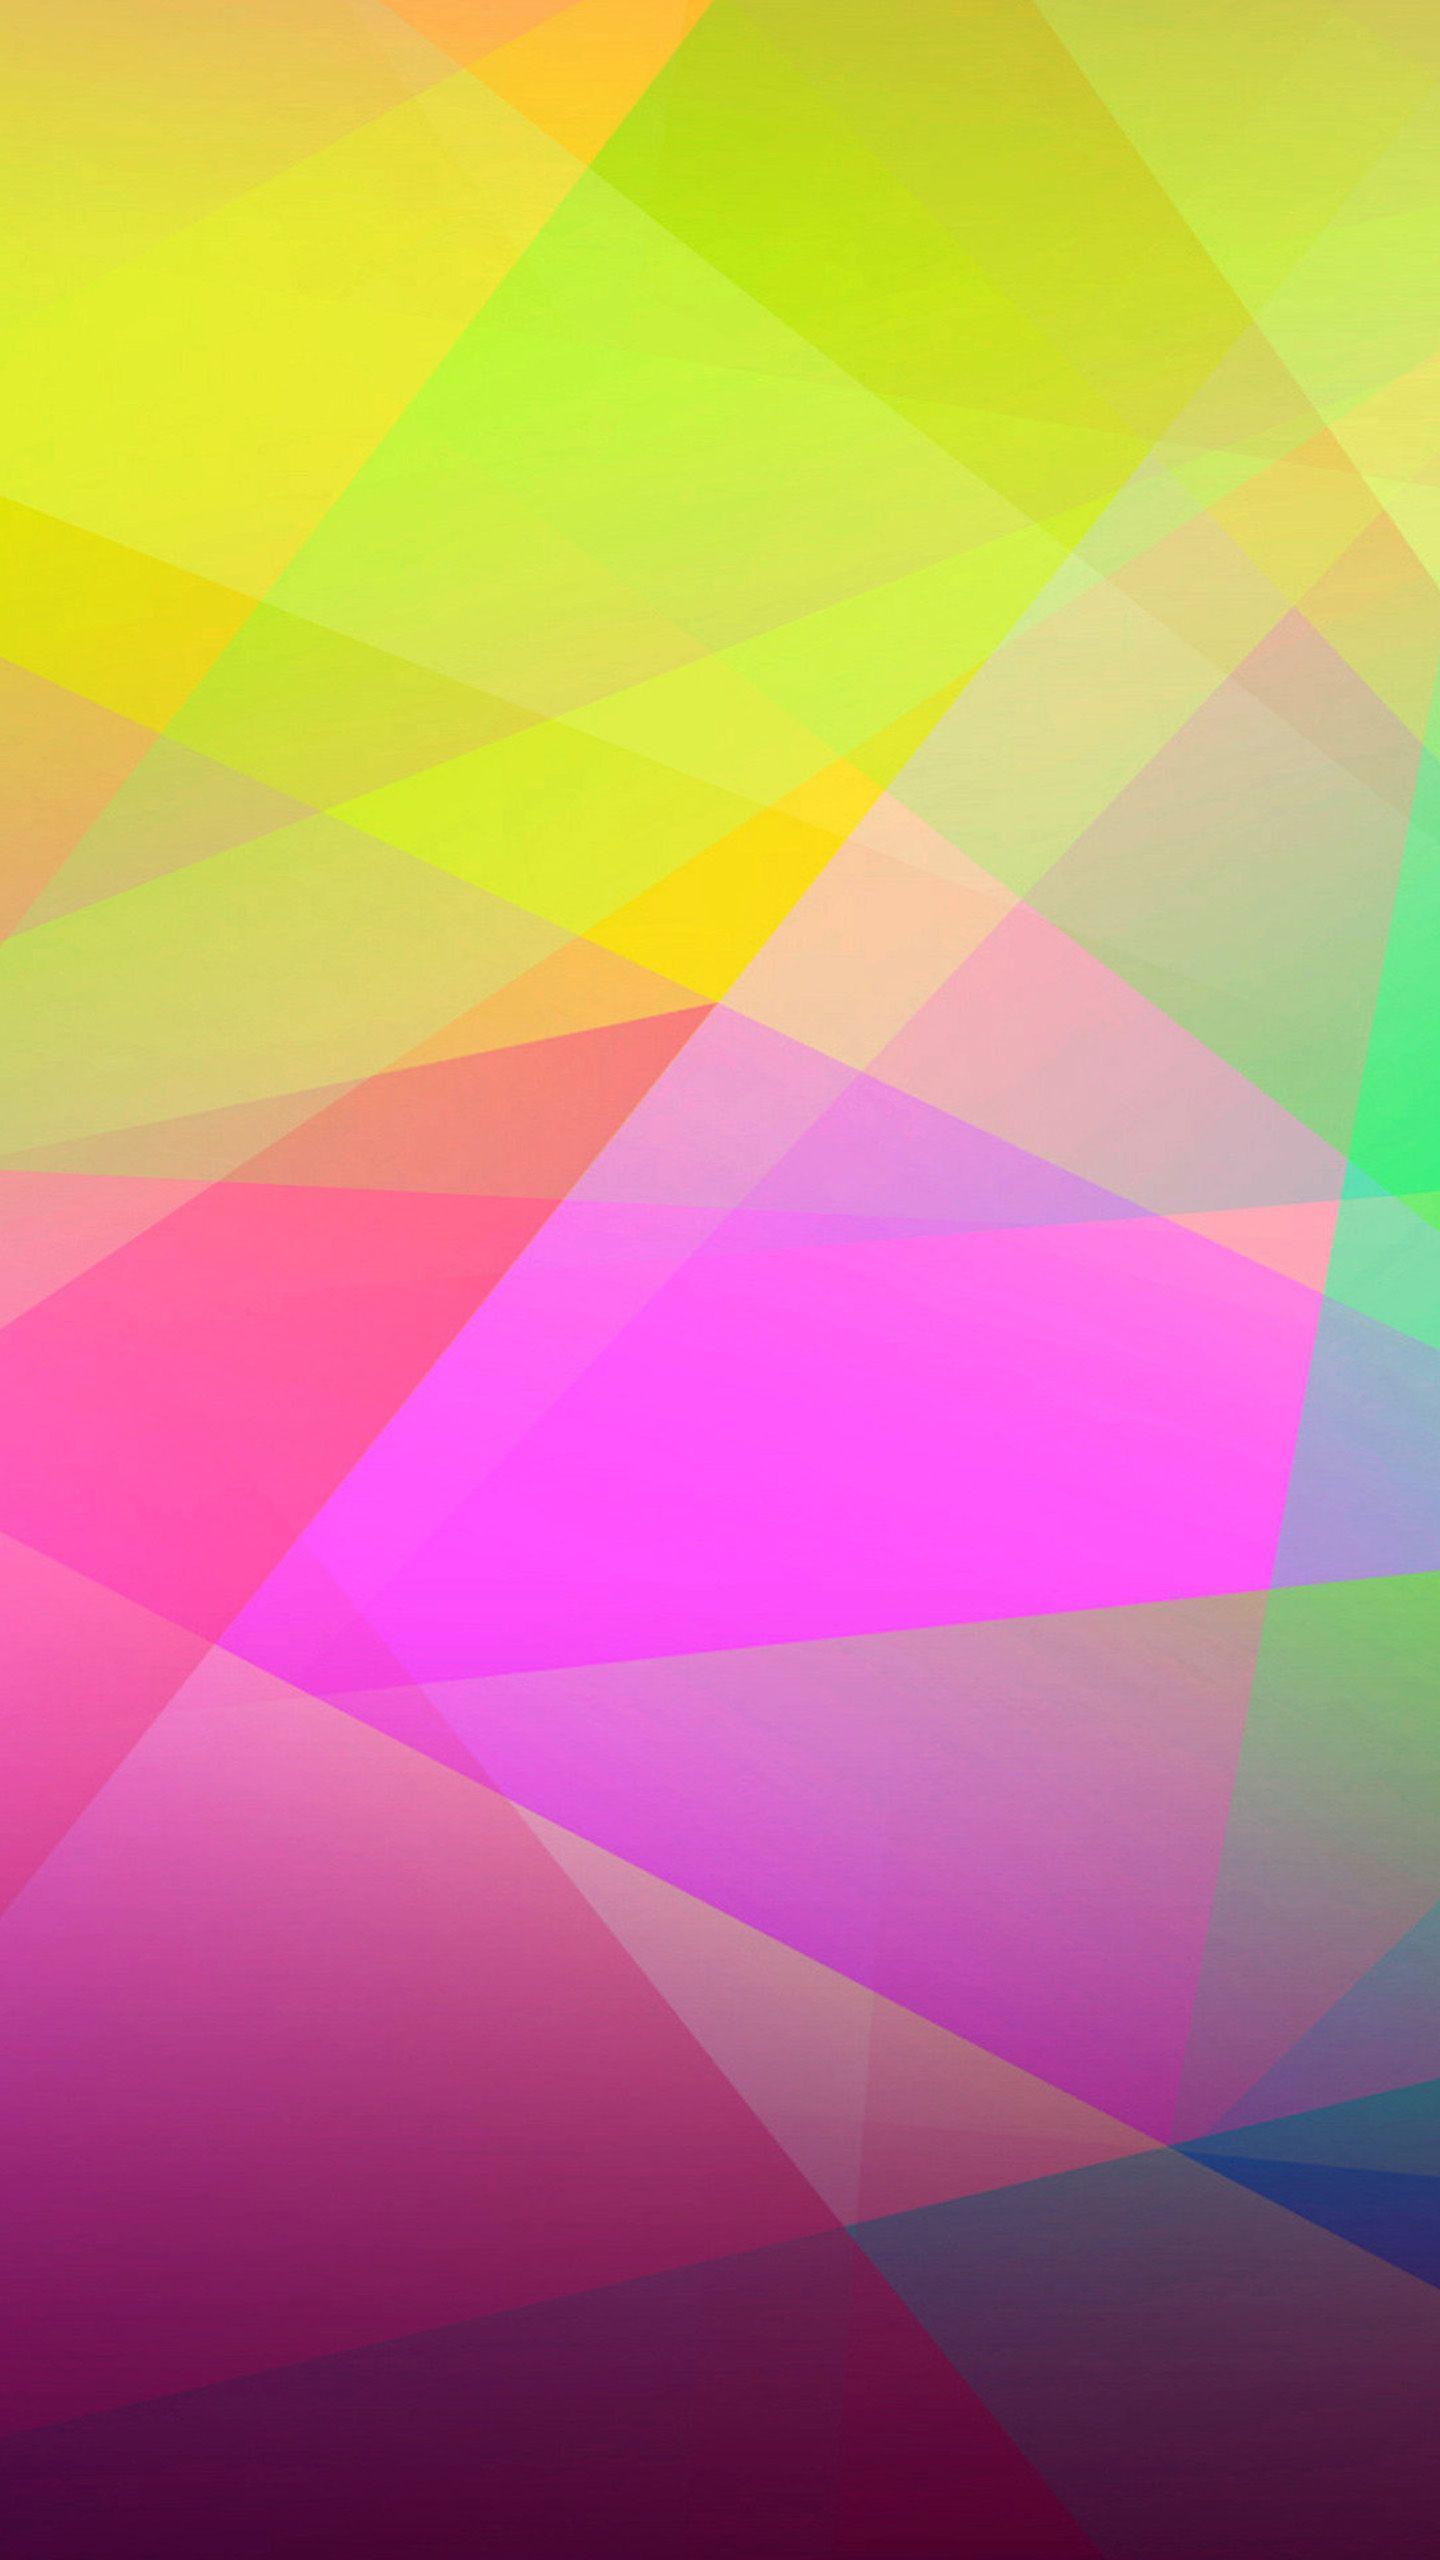 Abstract. Nexus 6 Wallpaper